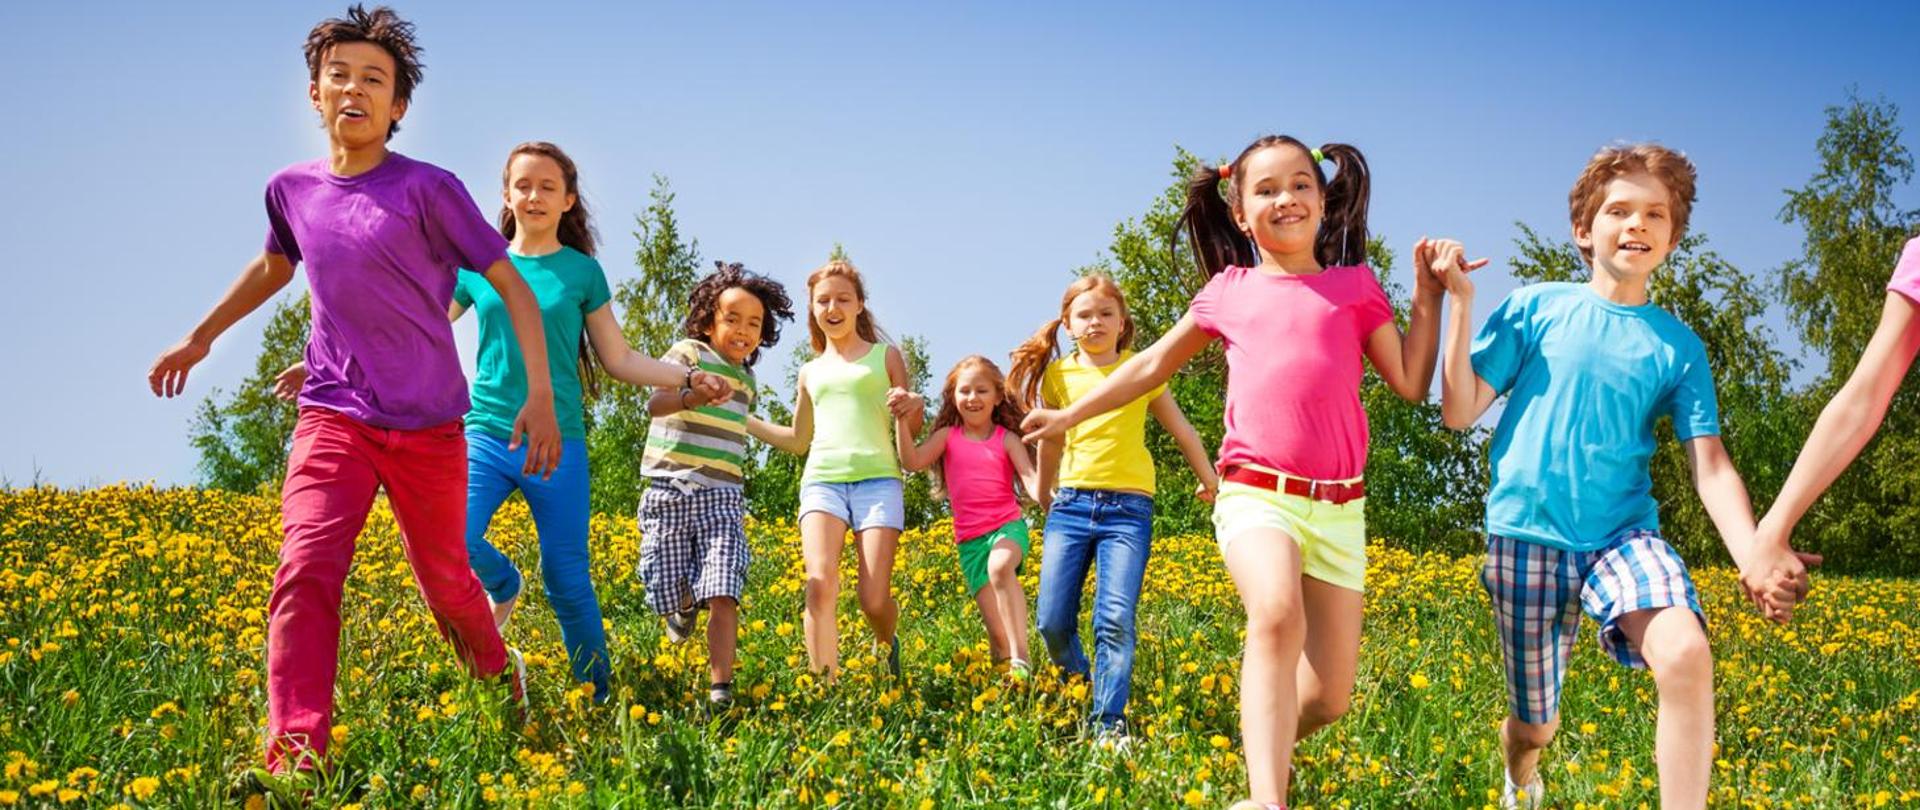 Dziewiątka dzieci biegnie przez zieloną łąkę na której rosną żółte kwiaty. Wszystkie dzieci mają na sobie kolorowe, letnie ubrania i trzymają się za ręce